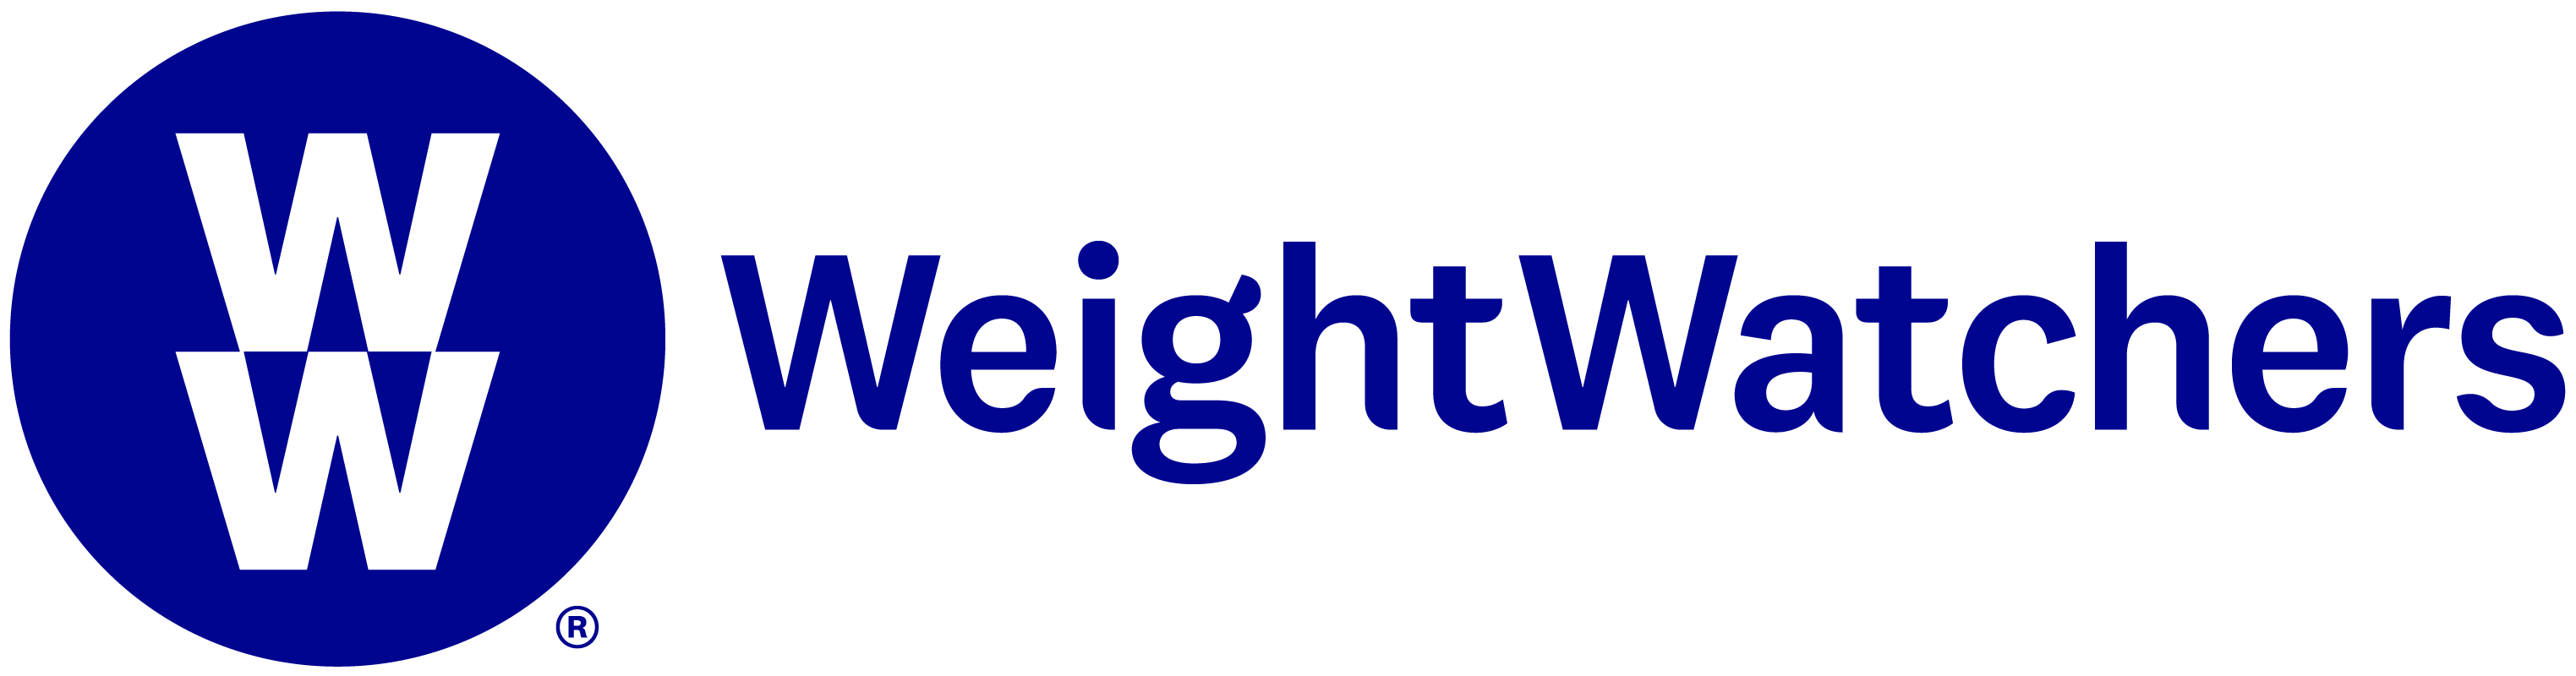 WW (Weight Watchers Reimagined) - Human Resources - Purdue University  Northwest